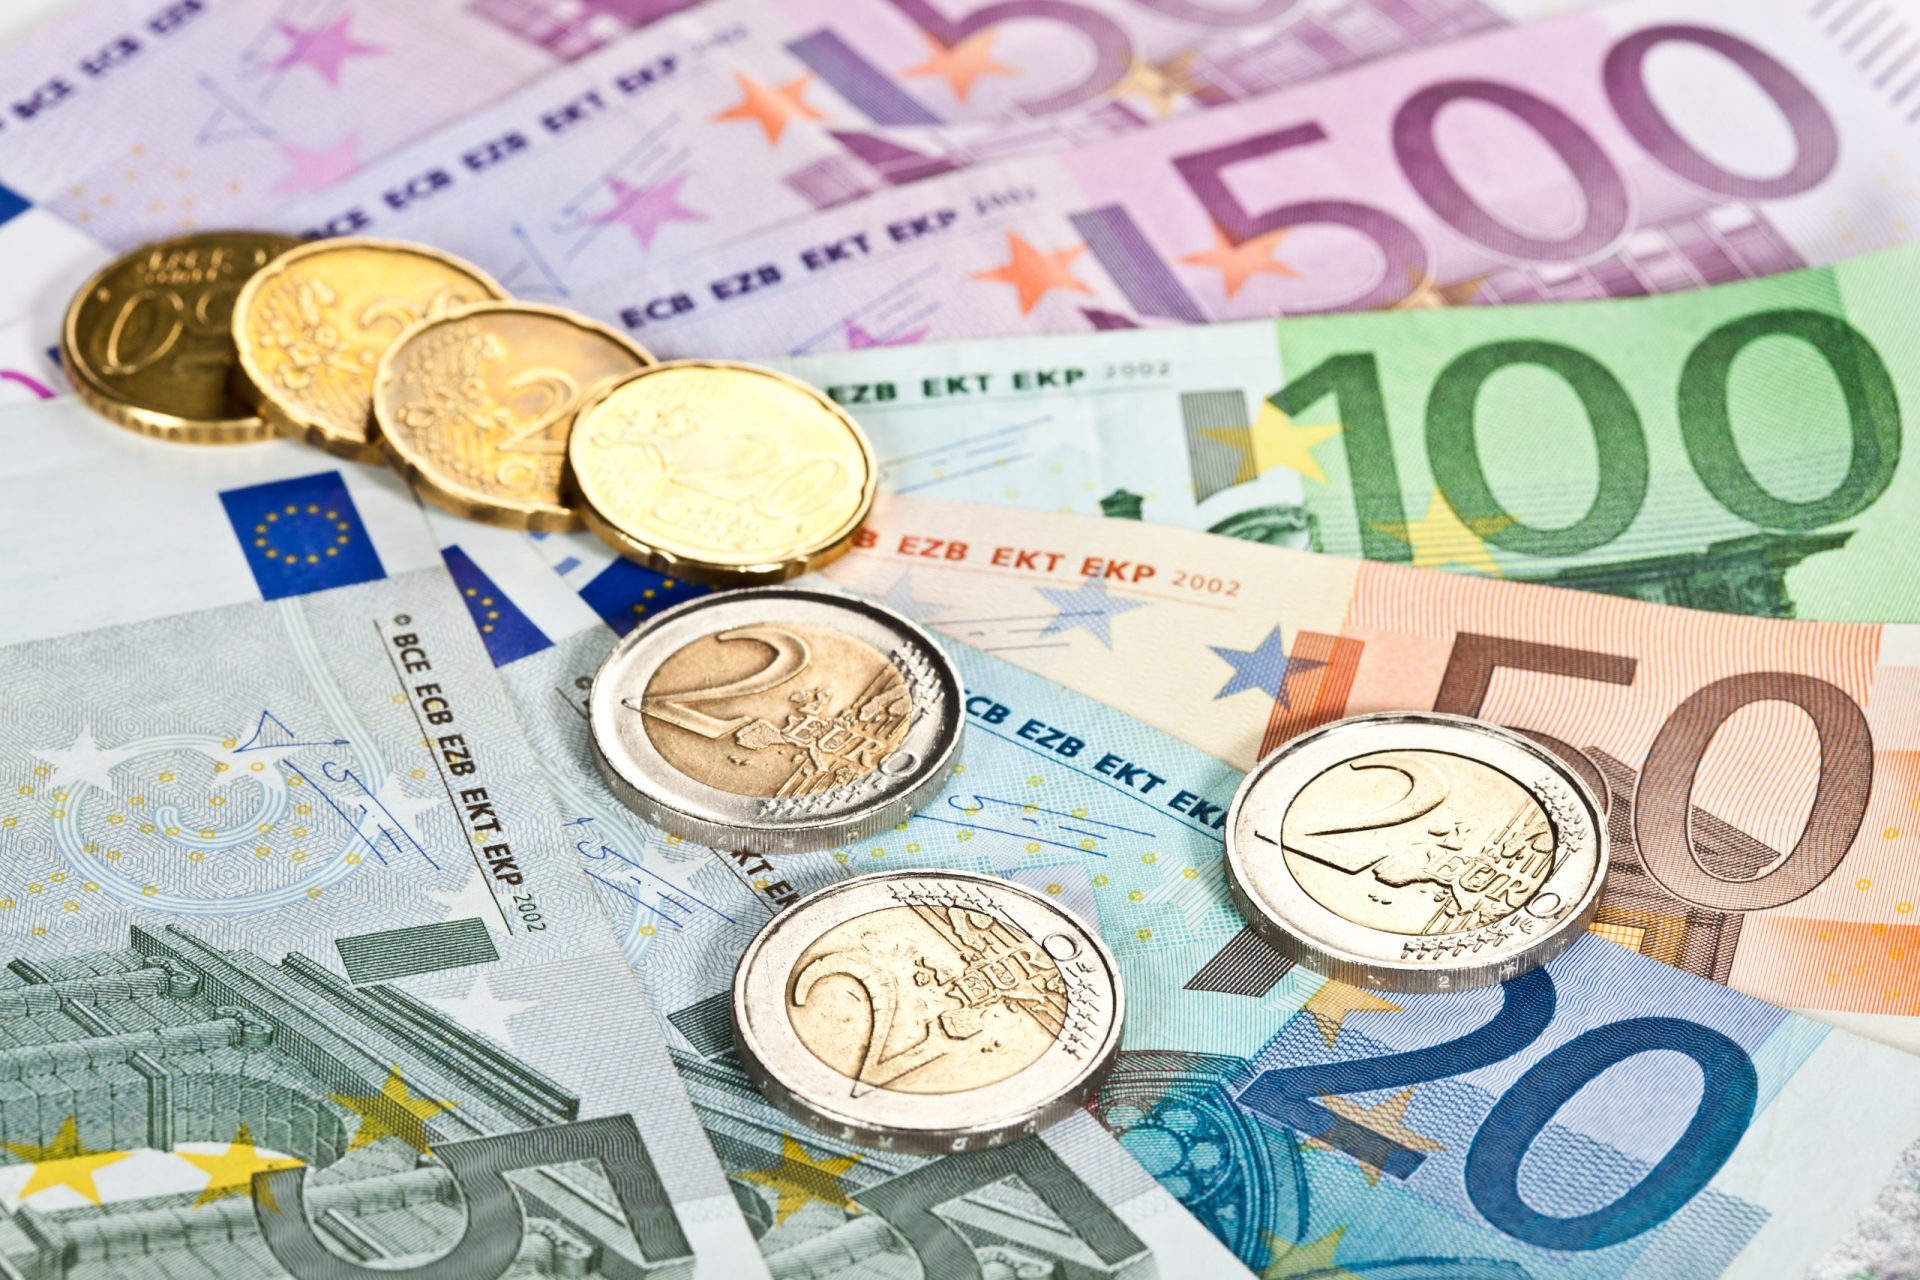 OE2015: Défice das administrações públicas cai para 1.553 milhões de euros